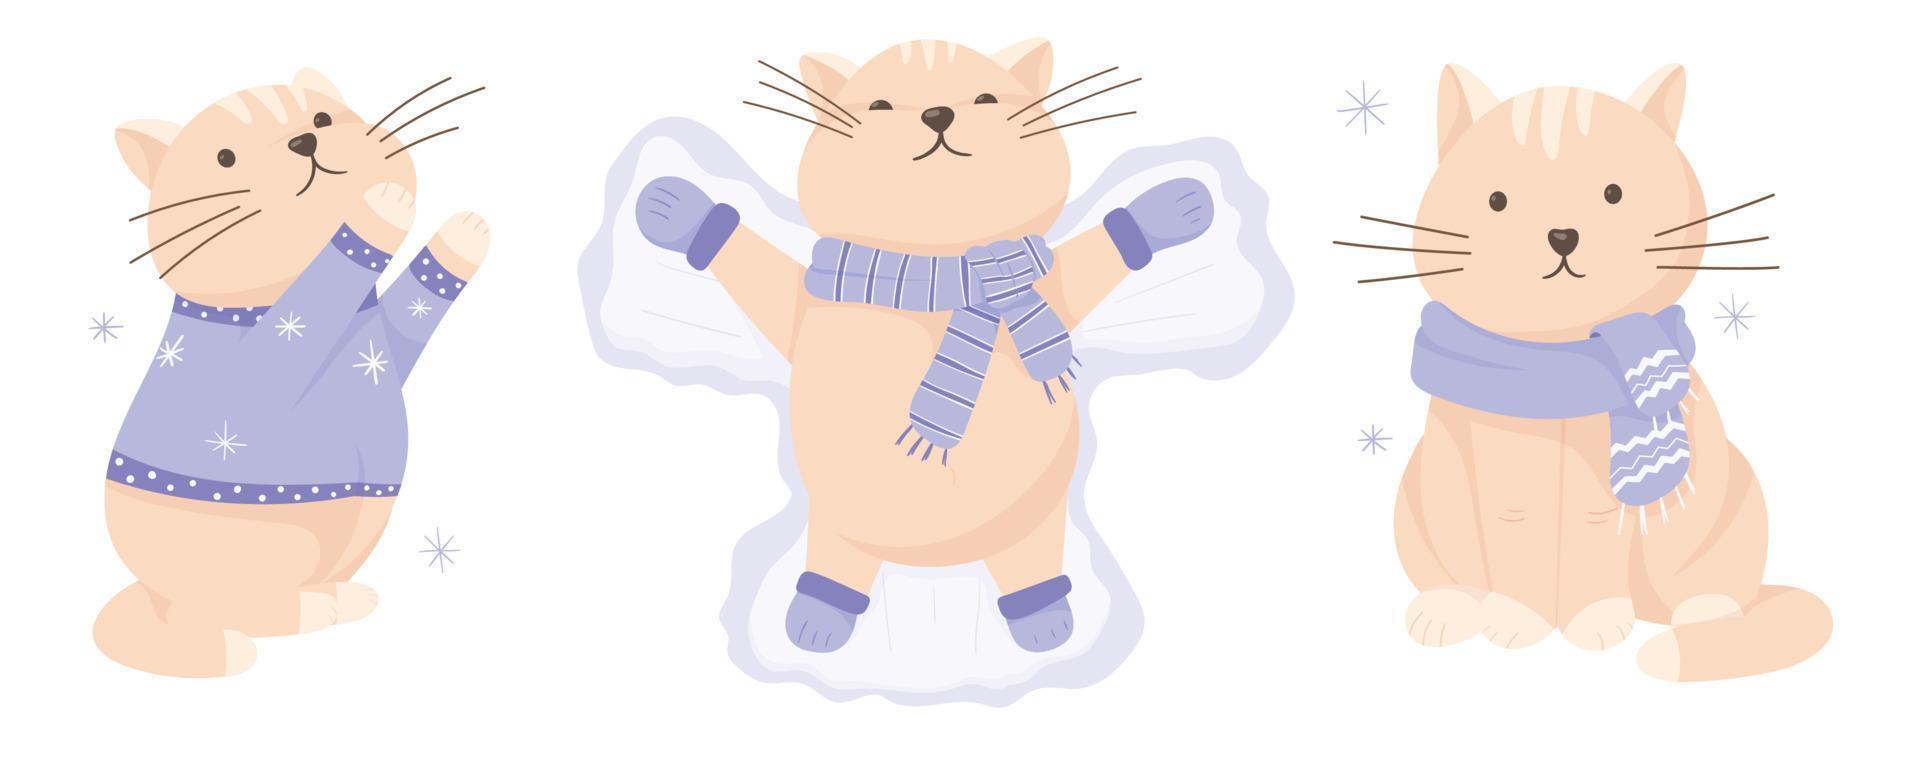 ilustração em vetor de gatos bonitos dos desenhos animados. inverno, roupas quentes, suéter, luvas e cachecol. ano novo e decorações de natal com neve.